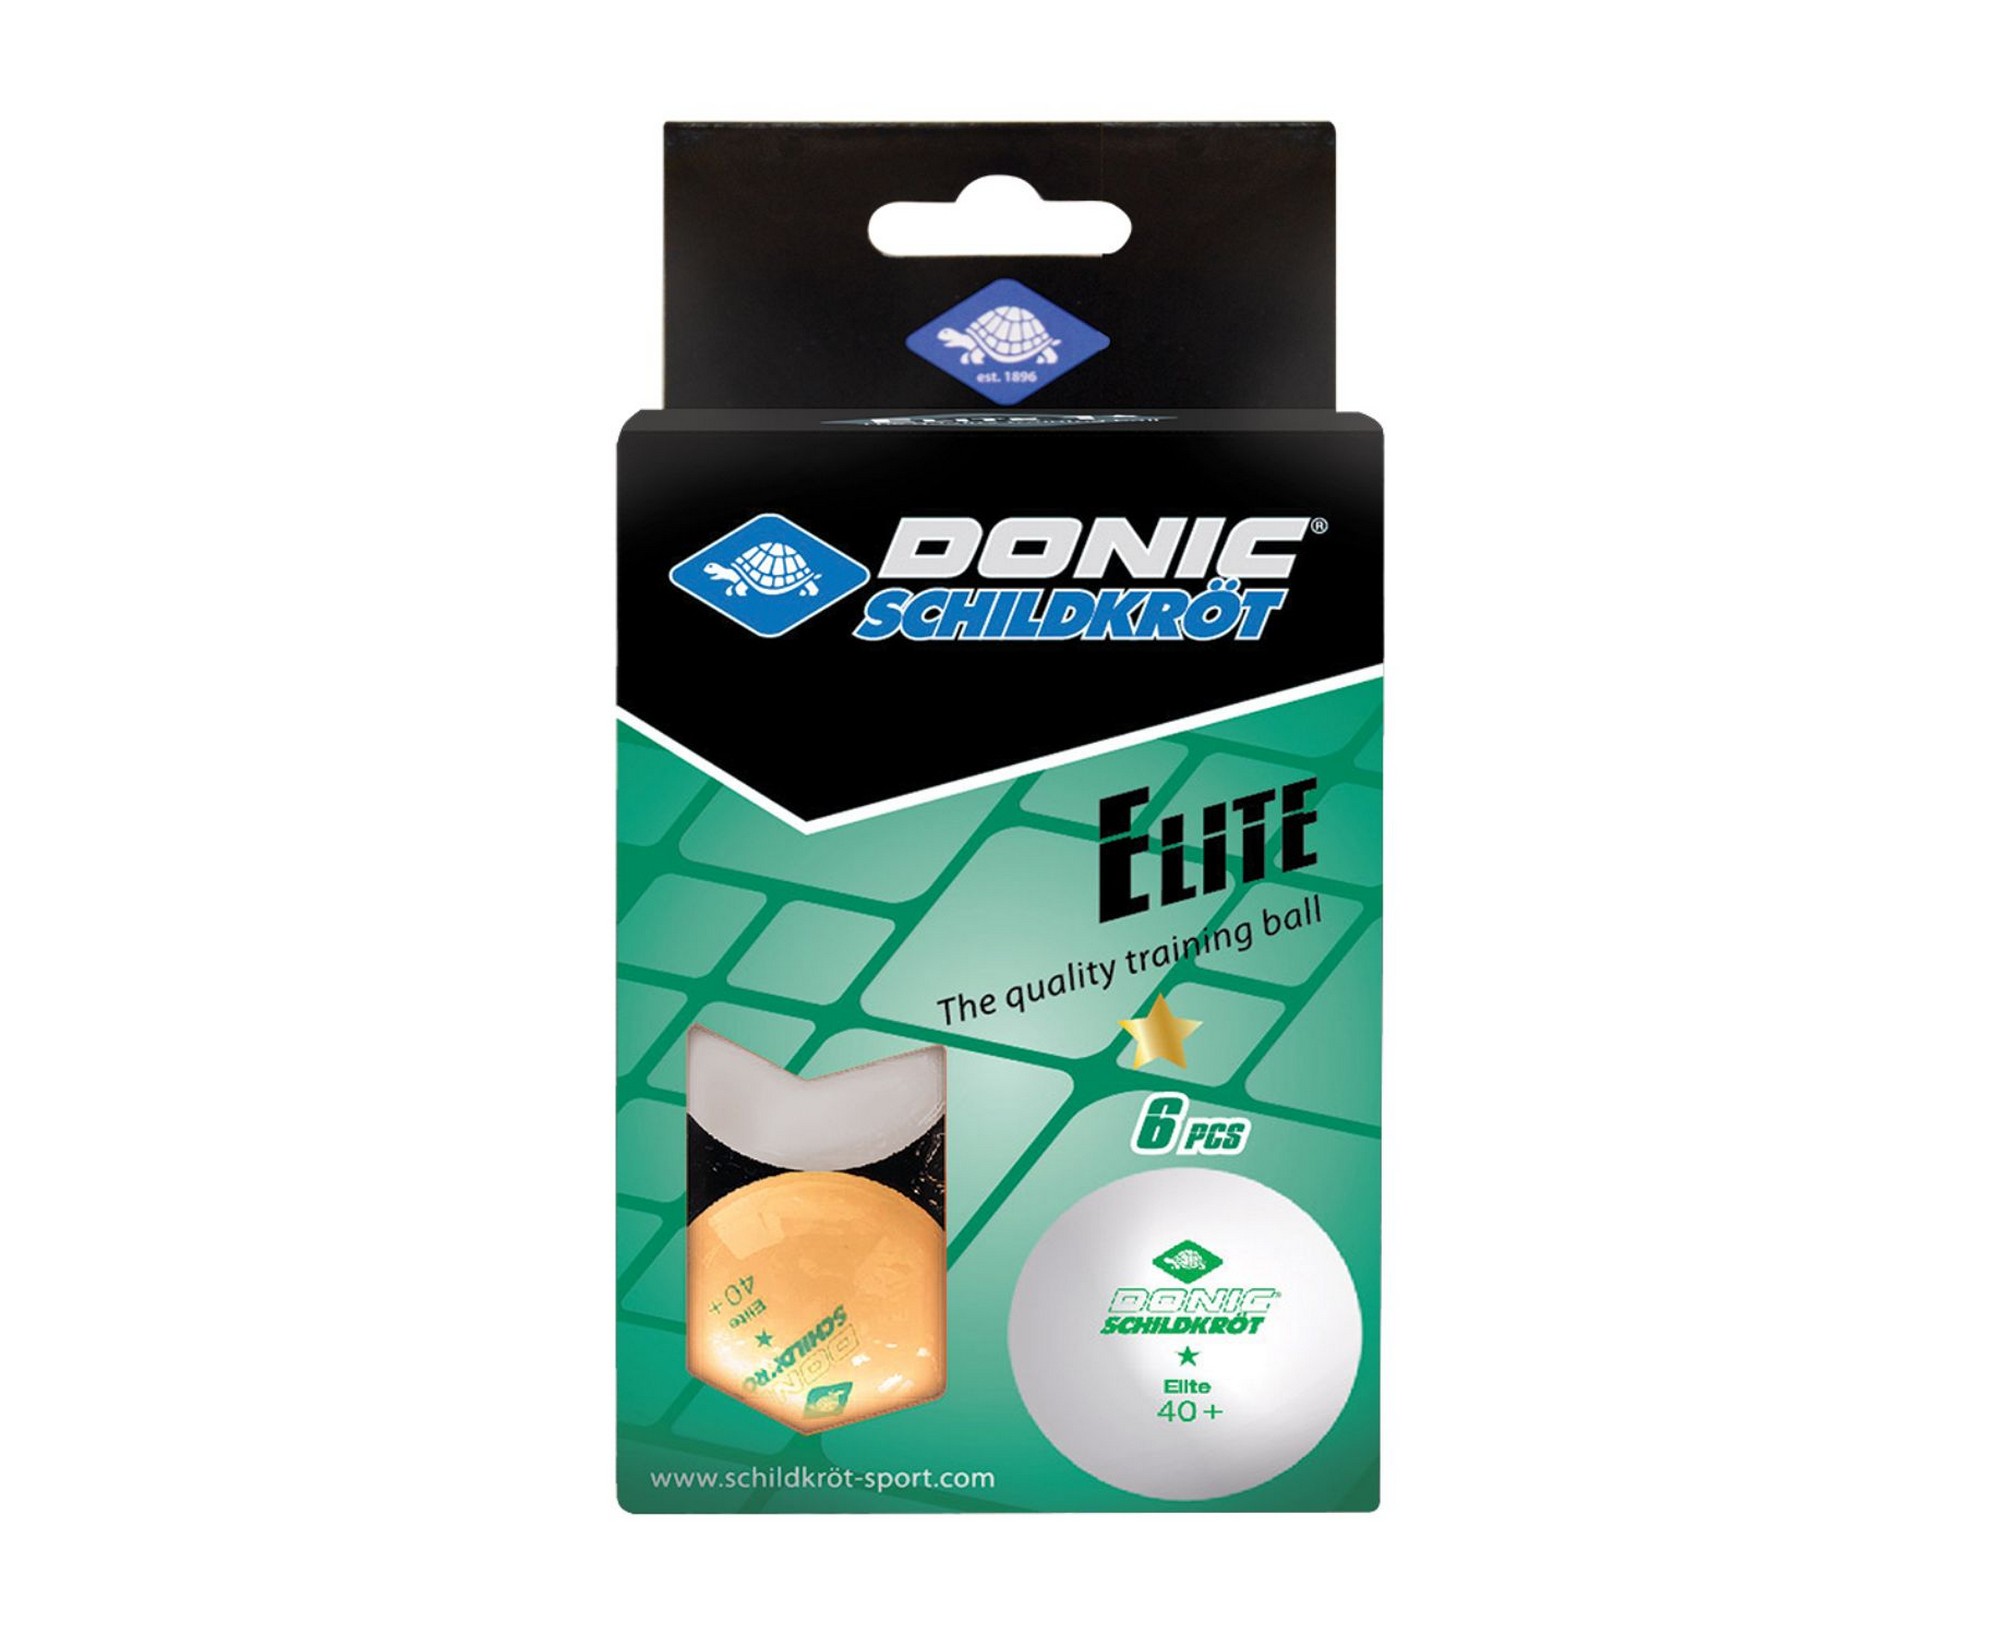 Мячики для настольного тенниса Donic Elite 1* 40+, 6 штук 608511 белый + оранжевый 2000_1636